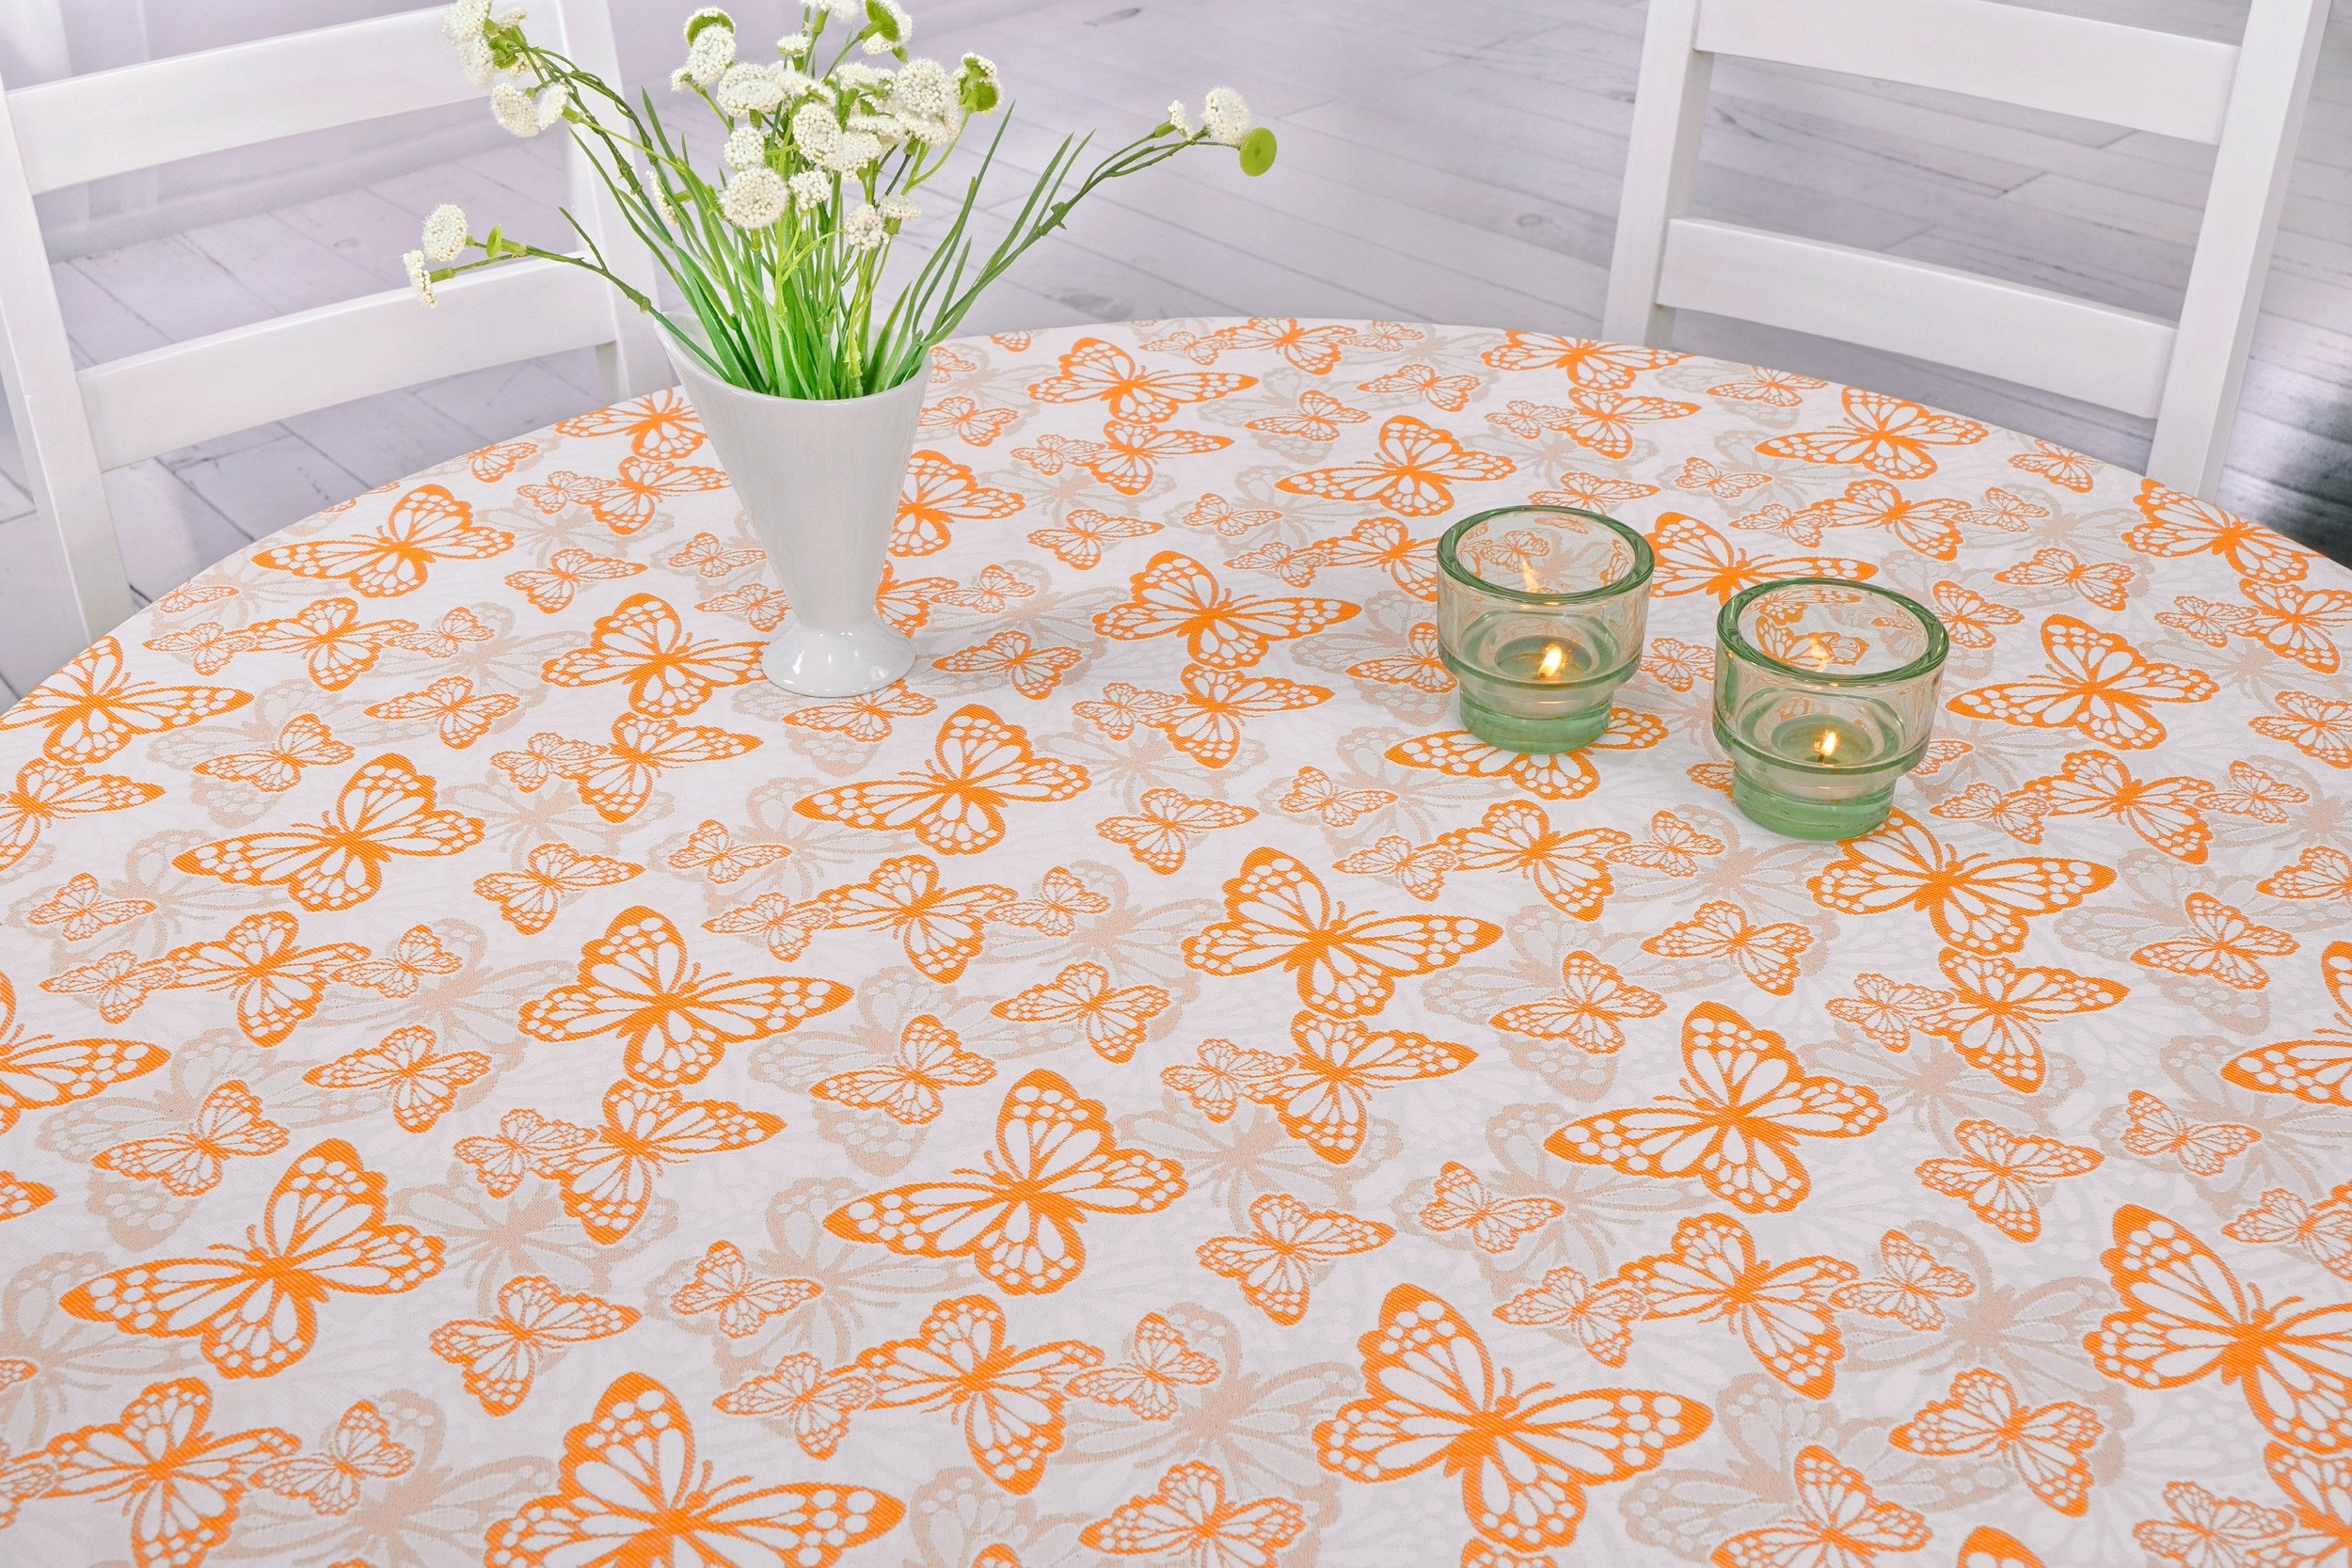 Fleckgeschützte Tischdecke Weiß Orange Muster Springtime Breite 100 cm OVAL